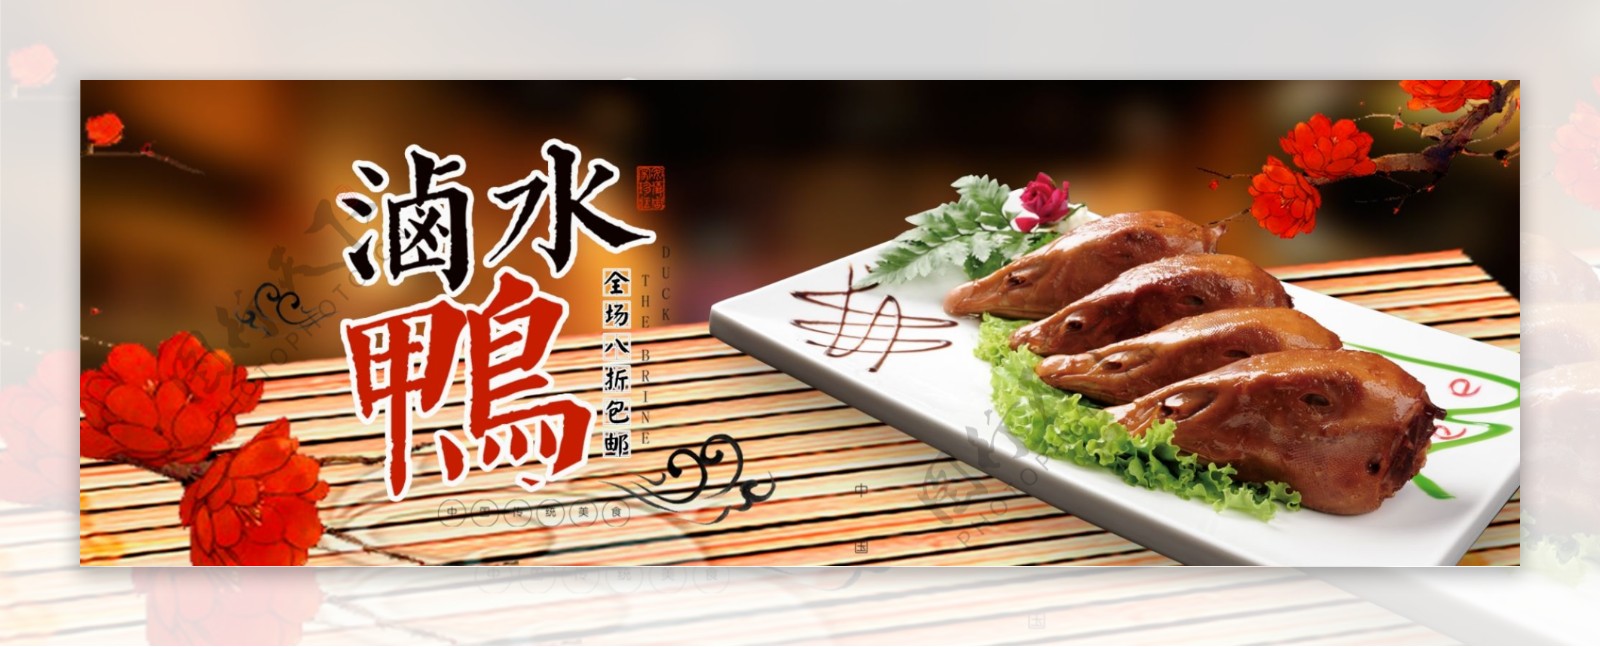 中国风美食熟食卤水鸭食品淘宝banner电商海报